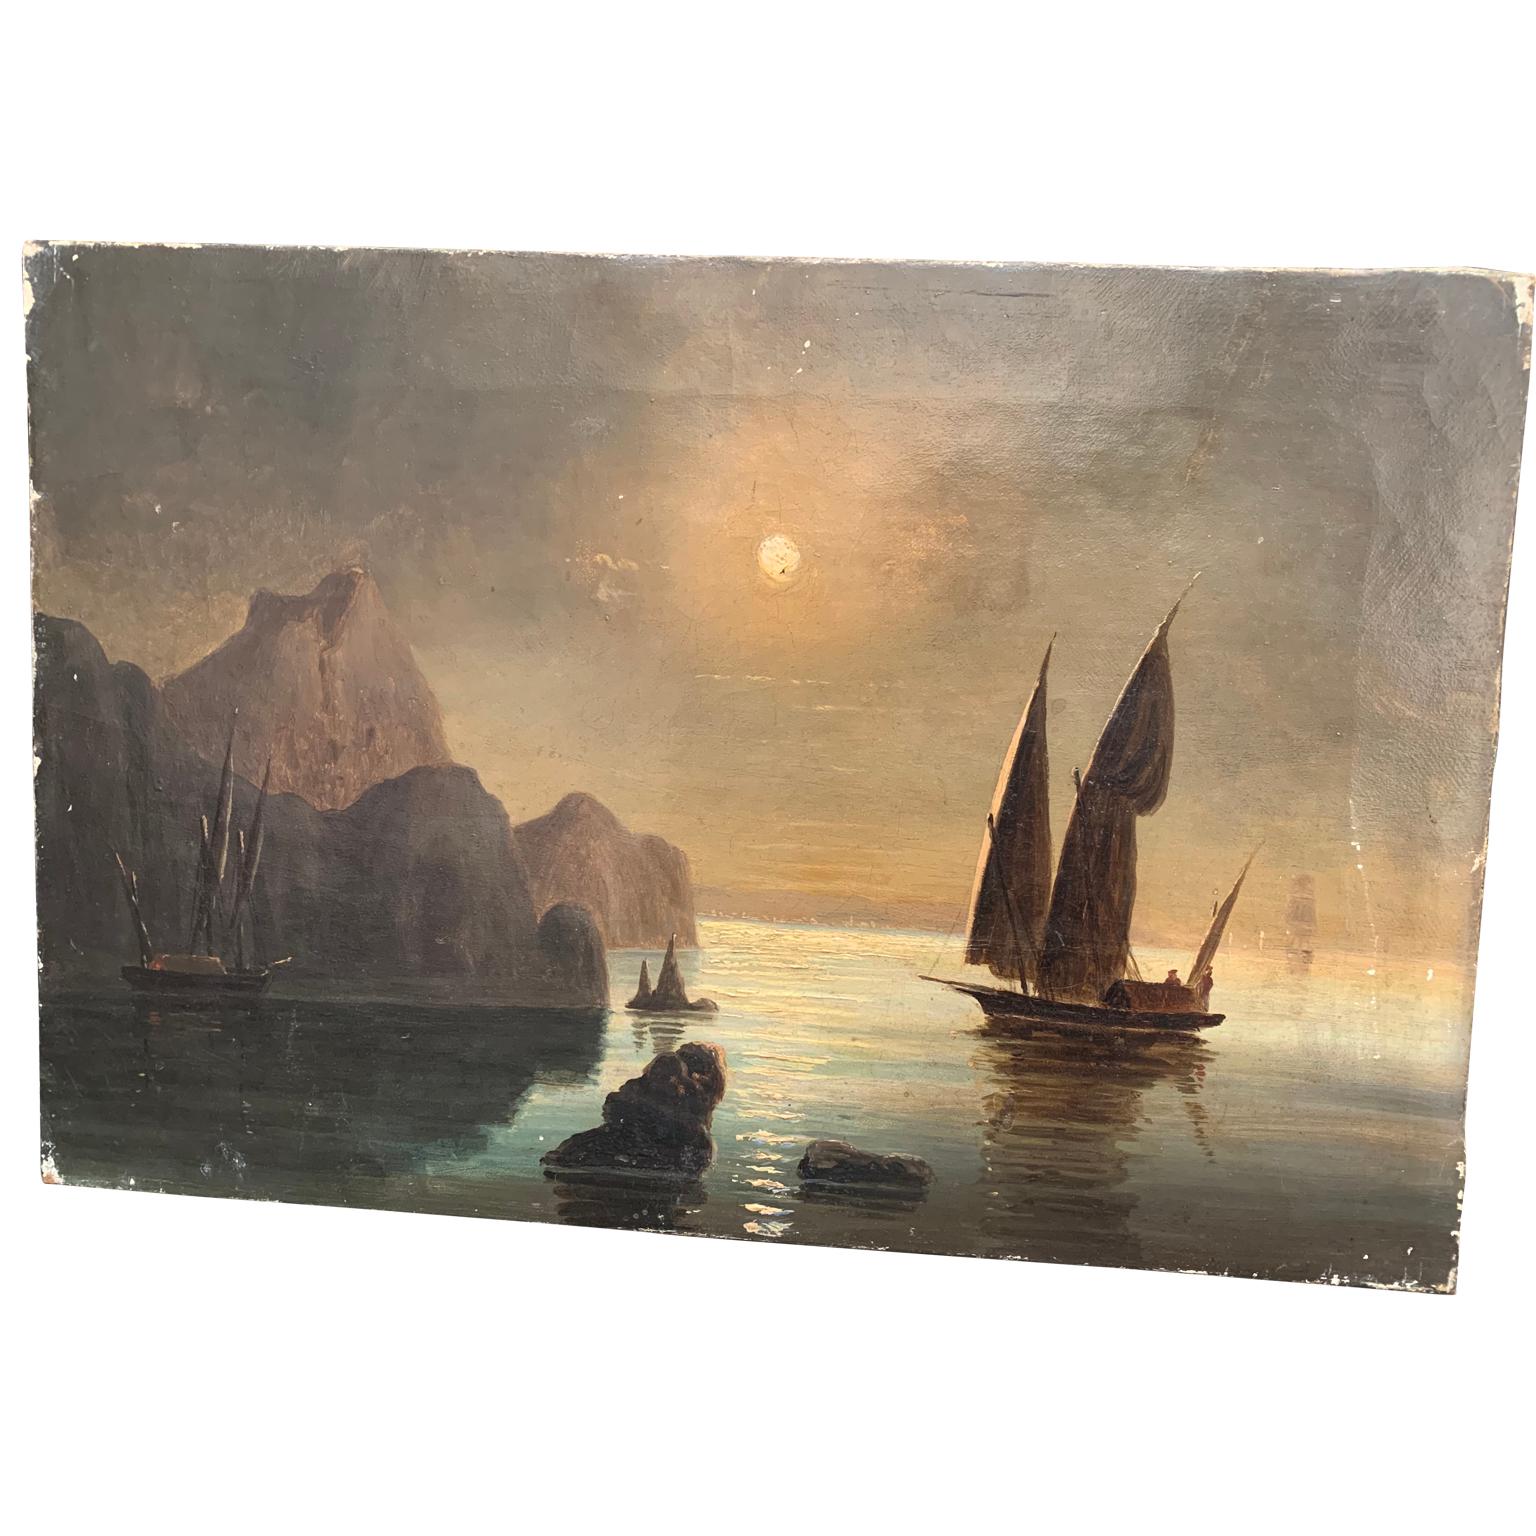 Ölgemälde aus dem 19. Jahrhundert mit schwedischer Küste und Segelboot im Mondlicht.
Dieses Kunstwerk hat kleine Beschädigungen, aber es hat auch seine ursprüngliche Patina und Gefühl durch die Jahrzehnte, die etwas sowohl wir als auch unsere Kunden